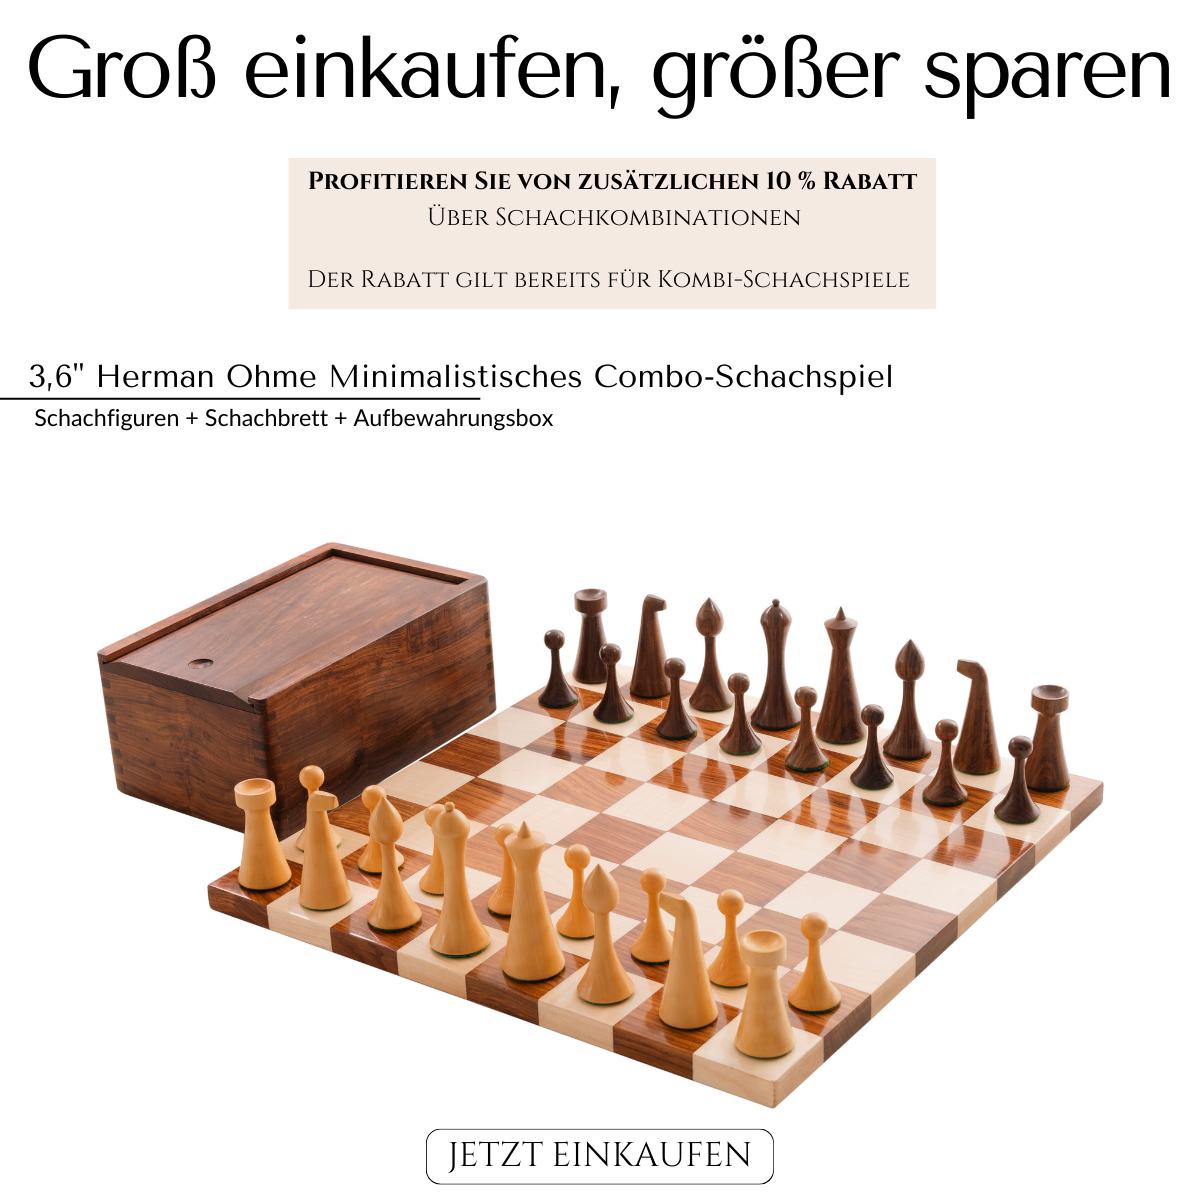 Royal Chess Mall Handgefertigte Schachfiguren Sets and Bretter kaufen